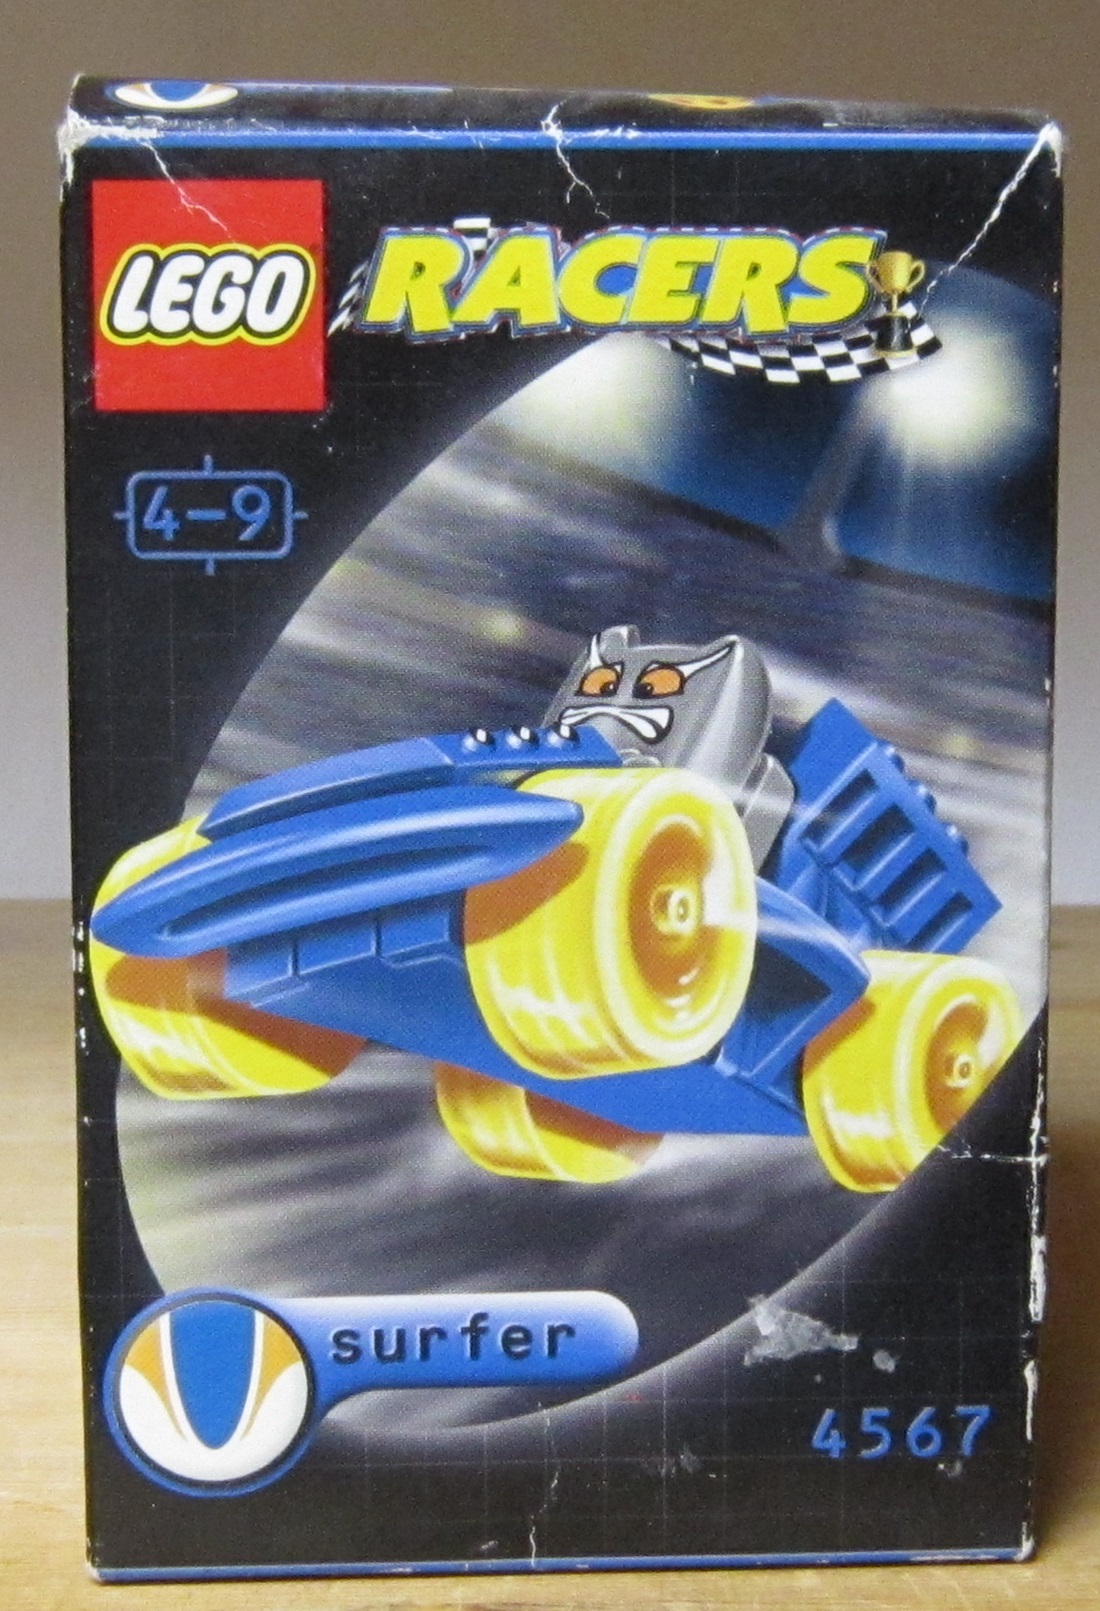 0010 Lego 4567